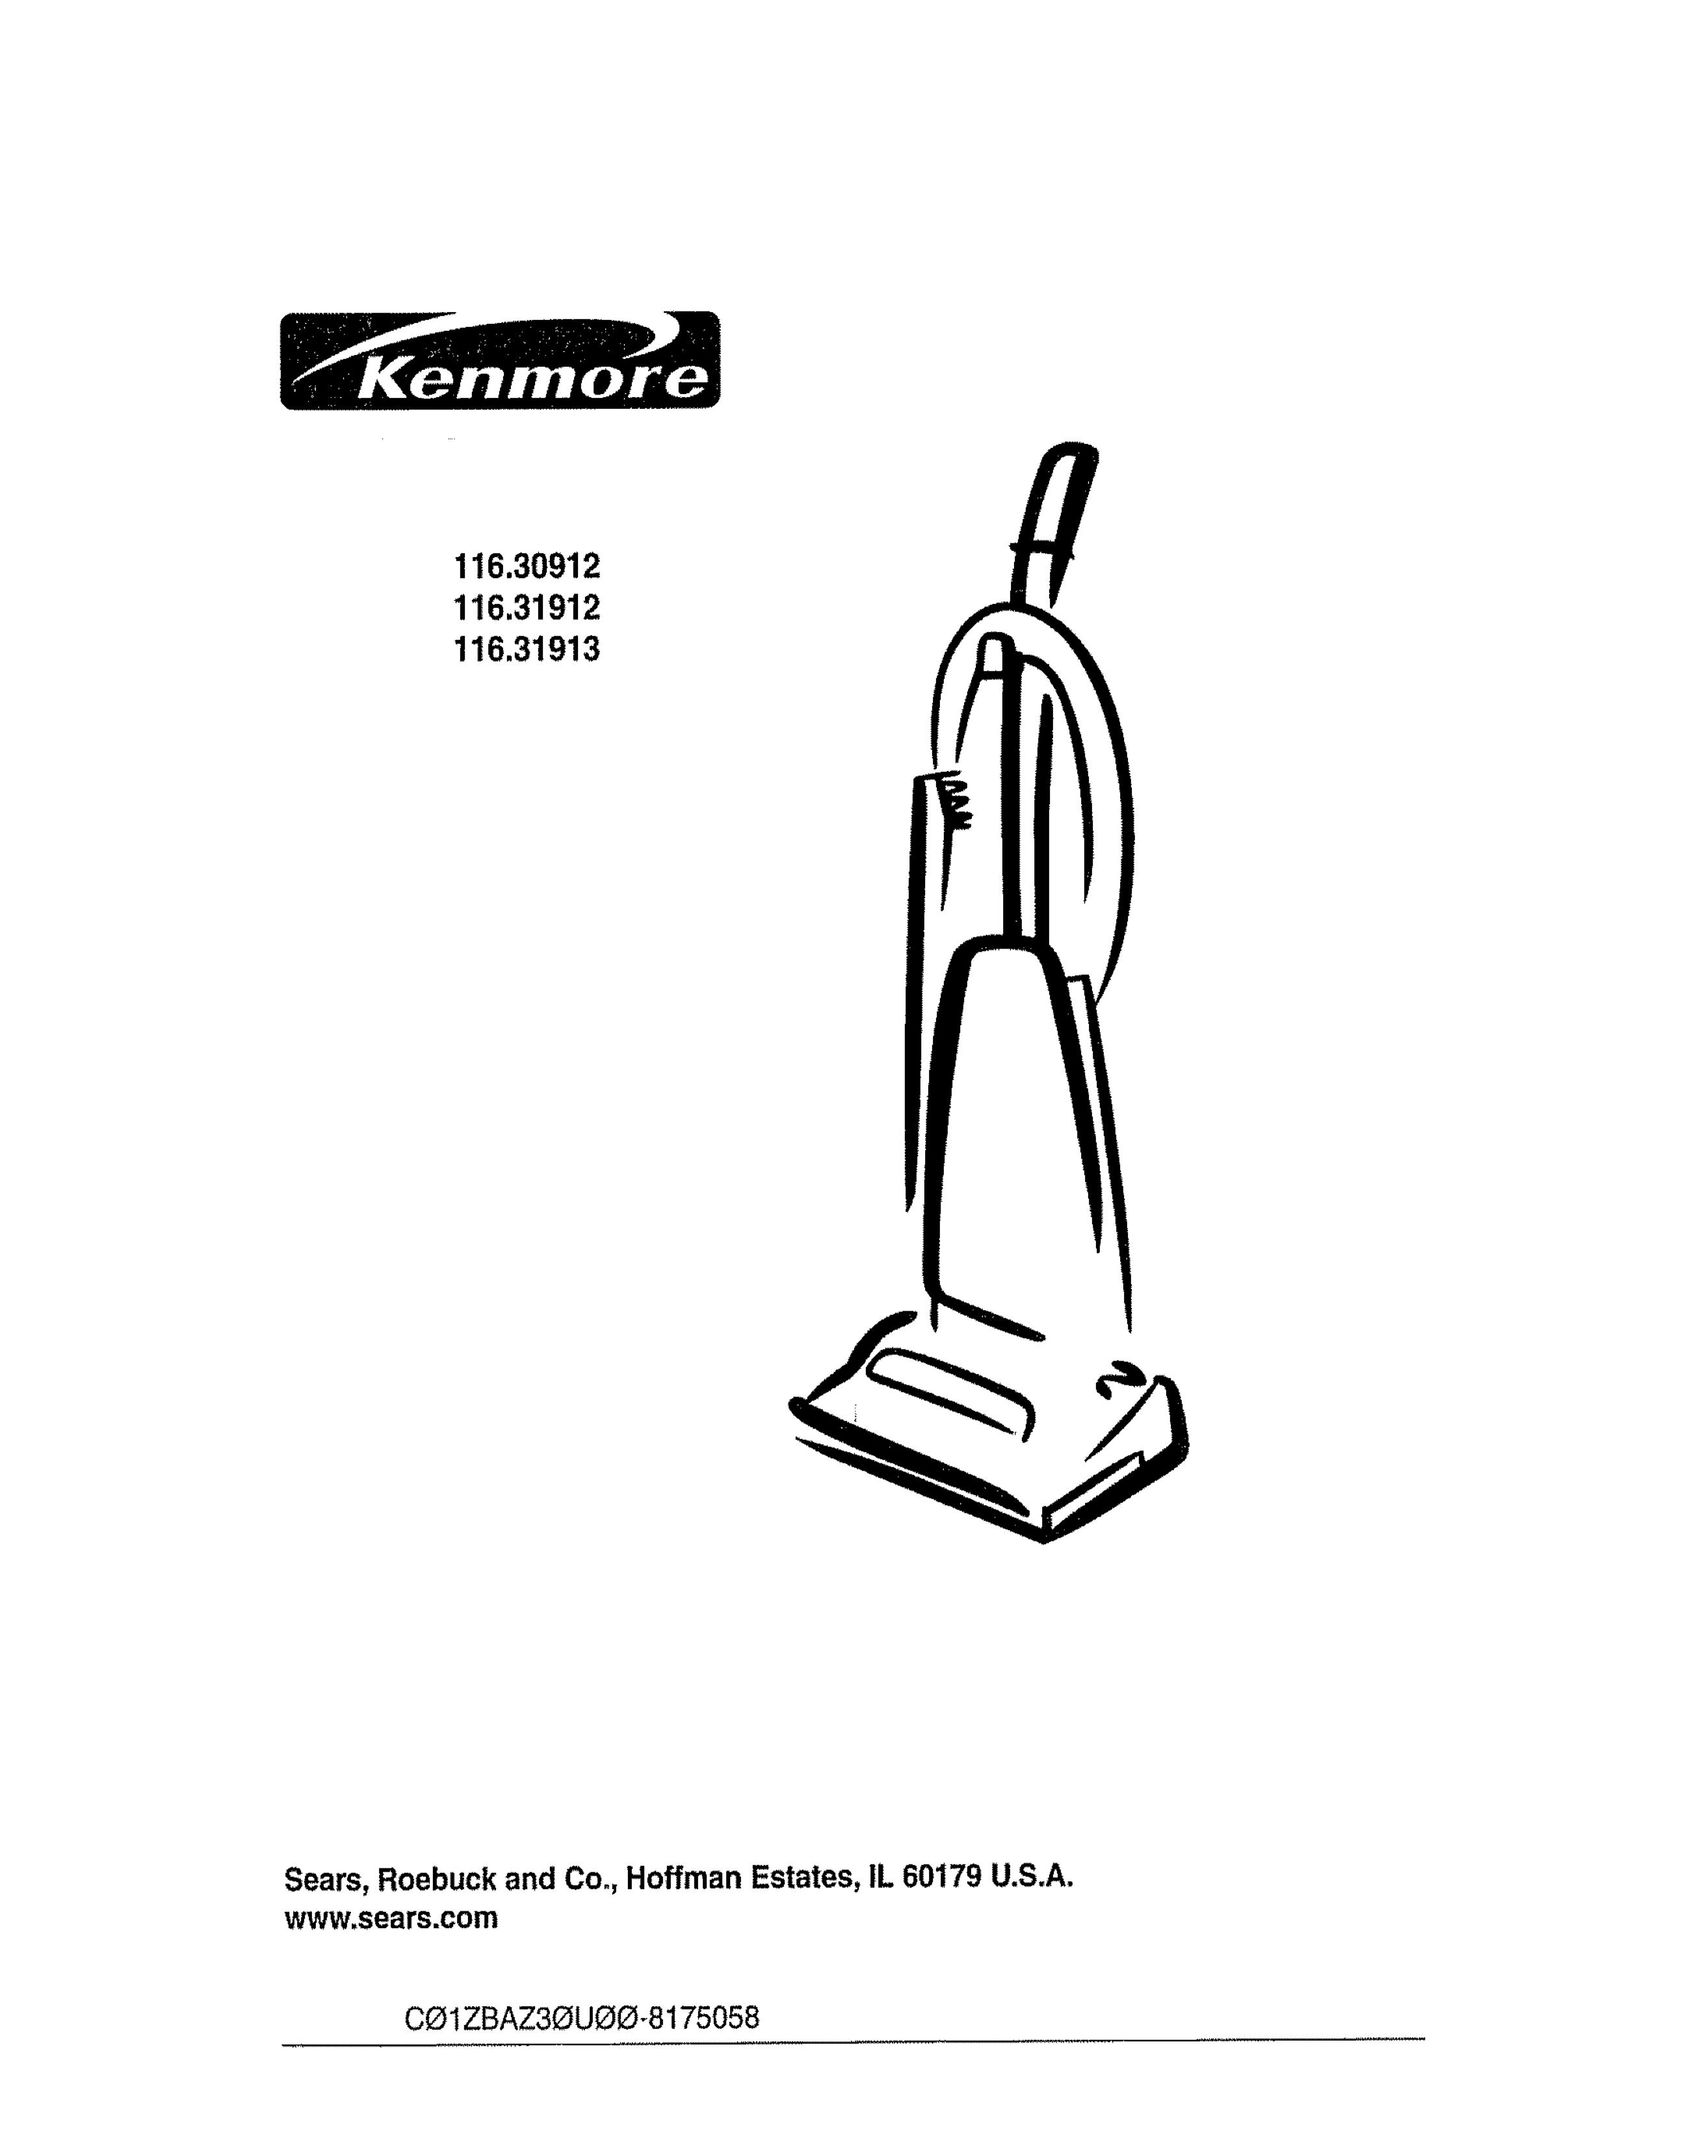 Kenmore 116.31912 Vacuum Cleaner User Manual